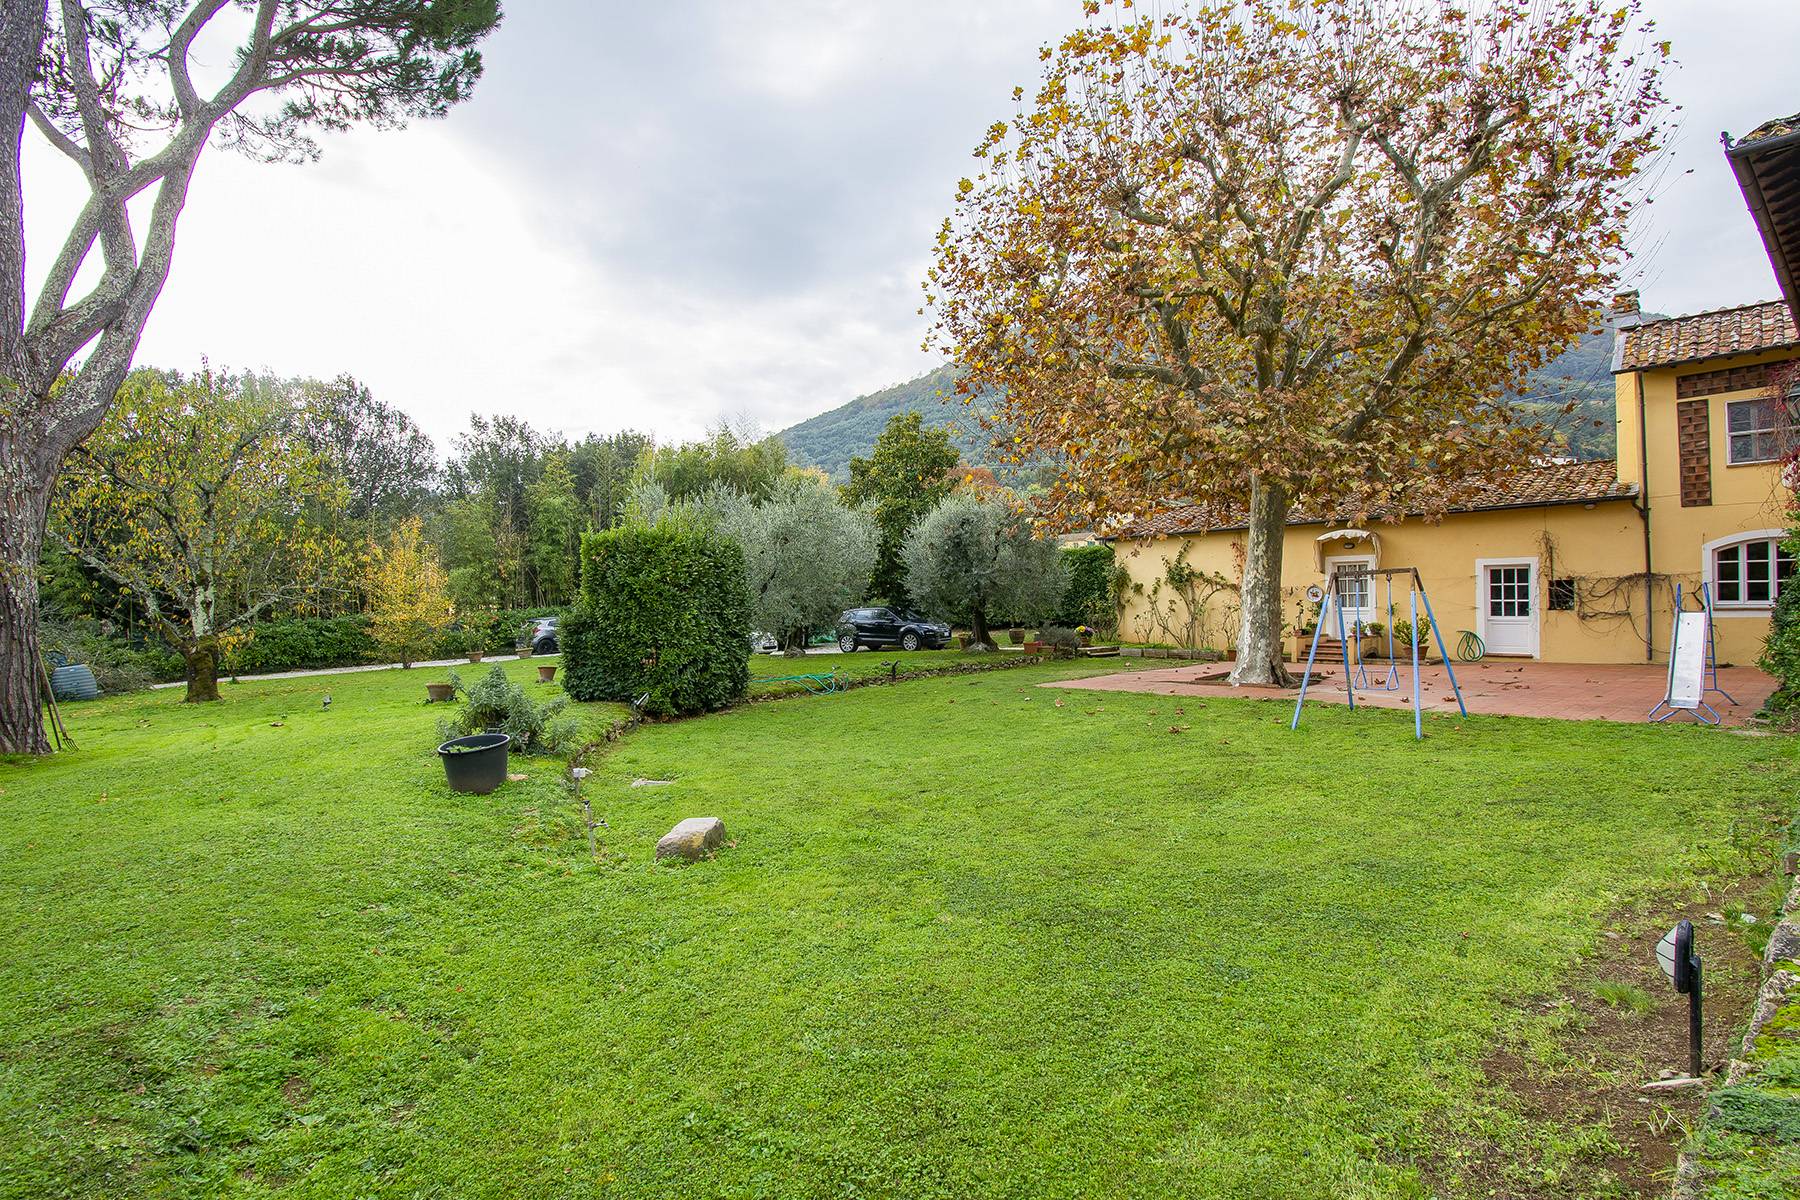 Casa indipendente in Vendita a Lucca: 5 locali, 500 mq - Foto 26